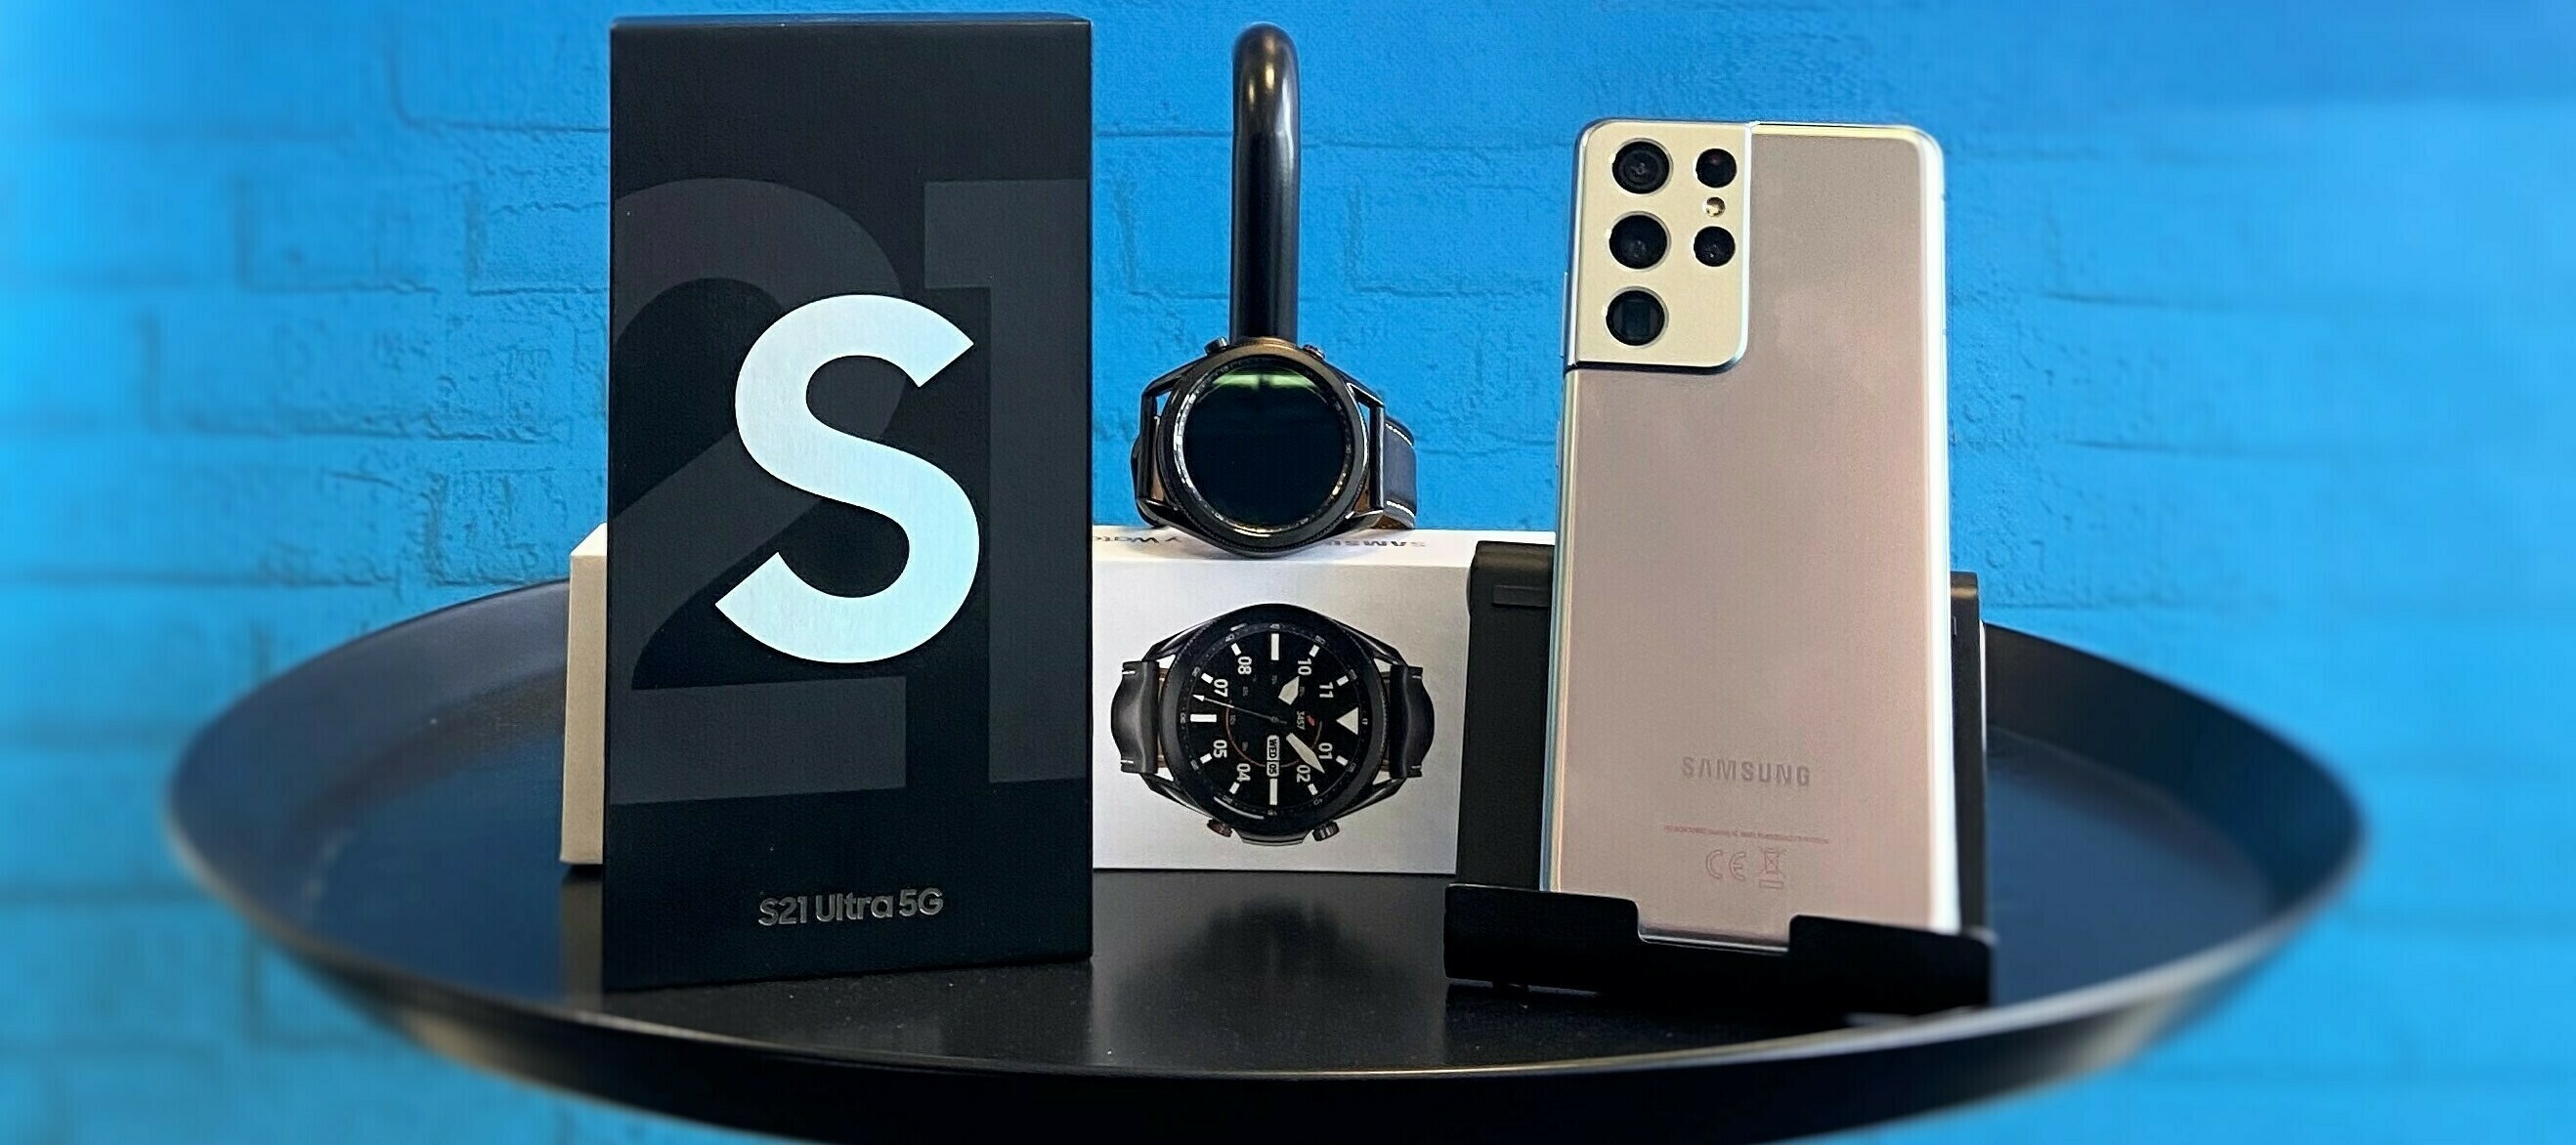 Samsung Galaxy S21 Ultra 5G & Galaxy Watch3 - bundle up und teste mit uns!